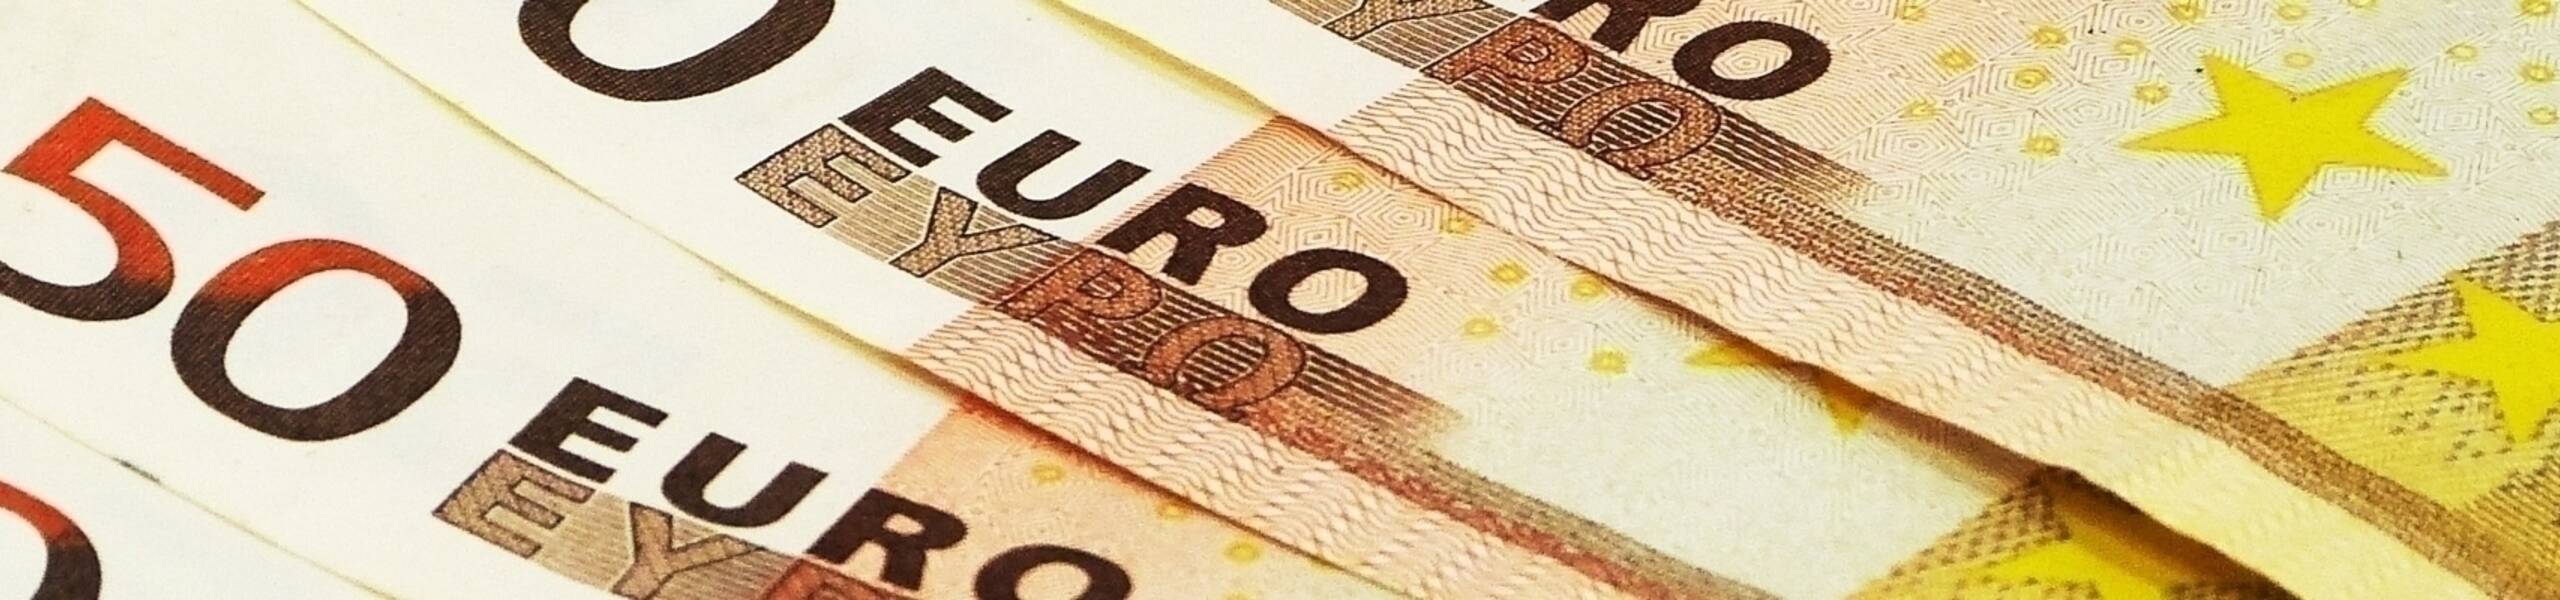 ZONA DO EURO: Vendas no varejo tem declínio de 0,3% em julho